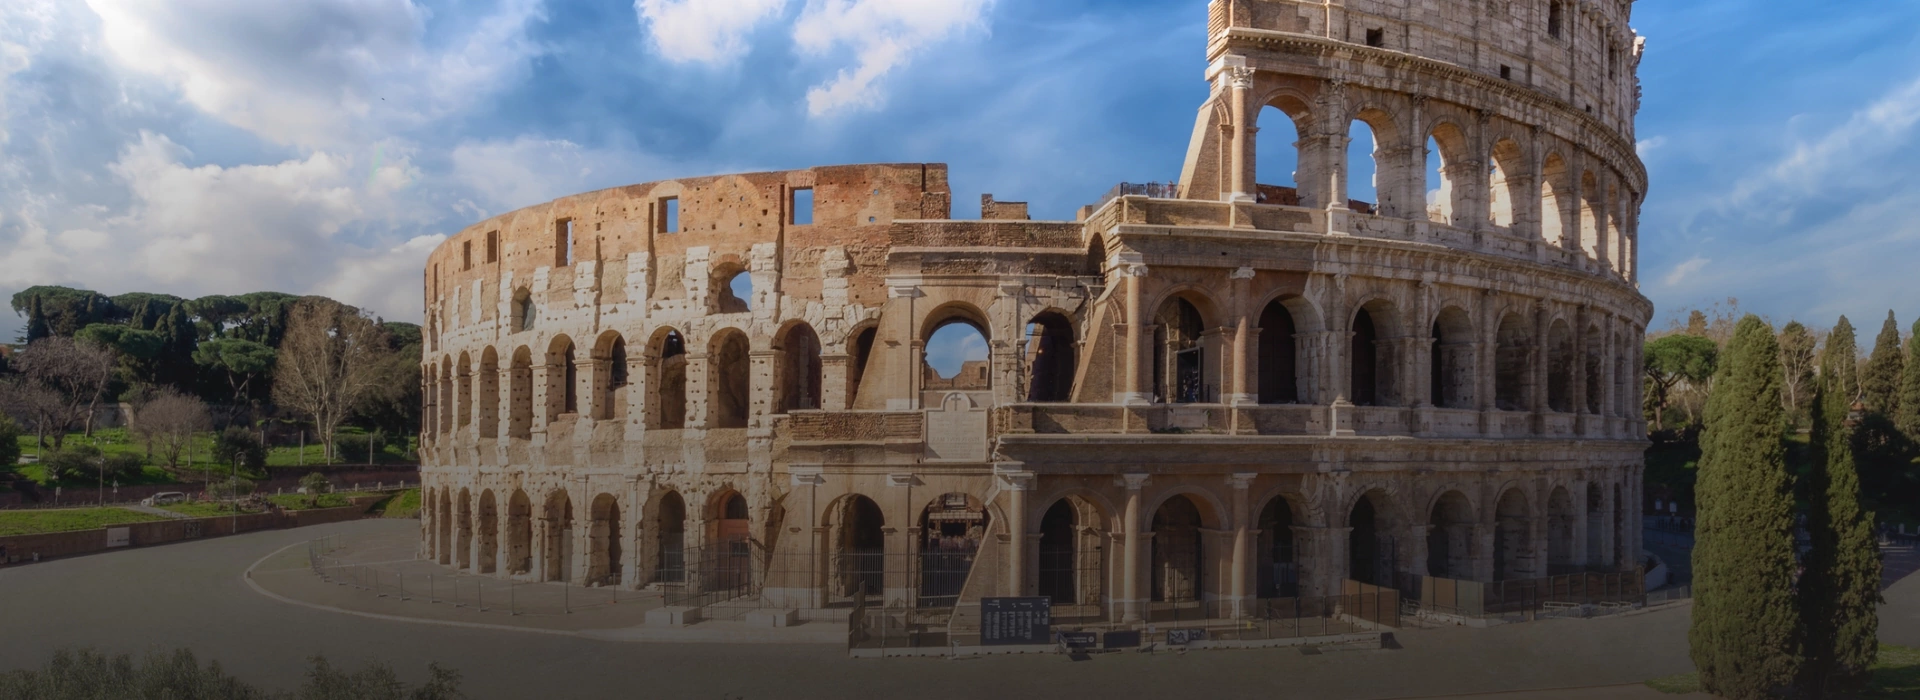 rzymskie Koloseum